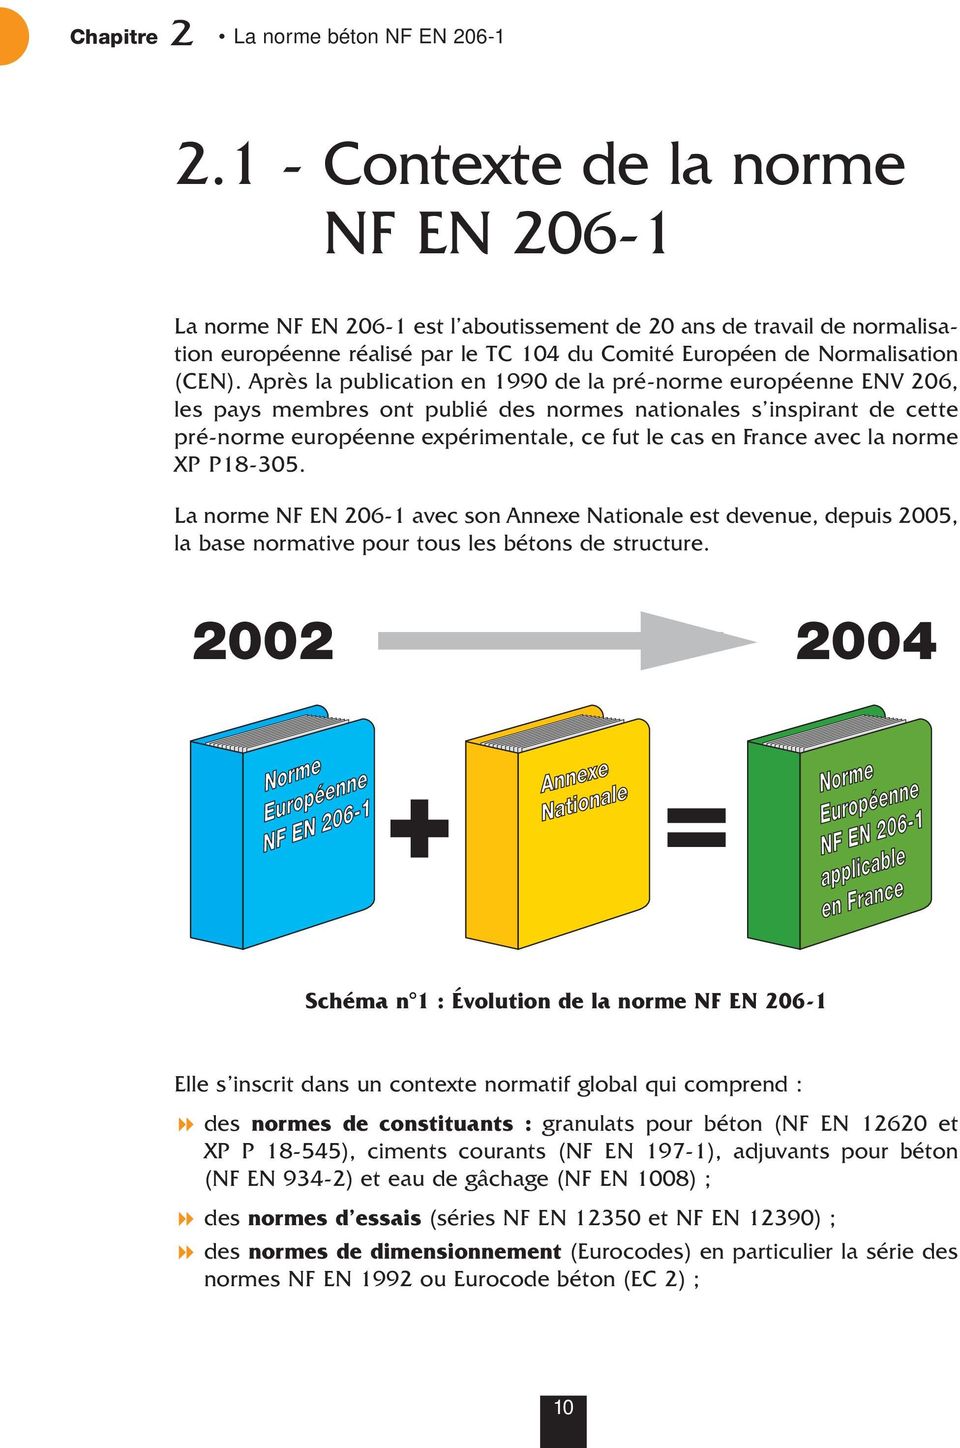 Après la publication en 1990 de la pré-norme européenne ENV 206, les pays membres ont publié des normes nationales s inspirant de cette pré-norme européenne expérimentale, ce fut le cas en France